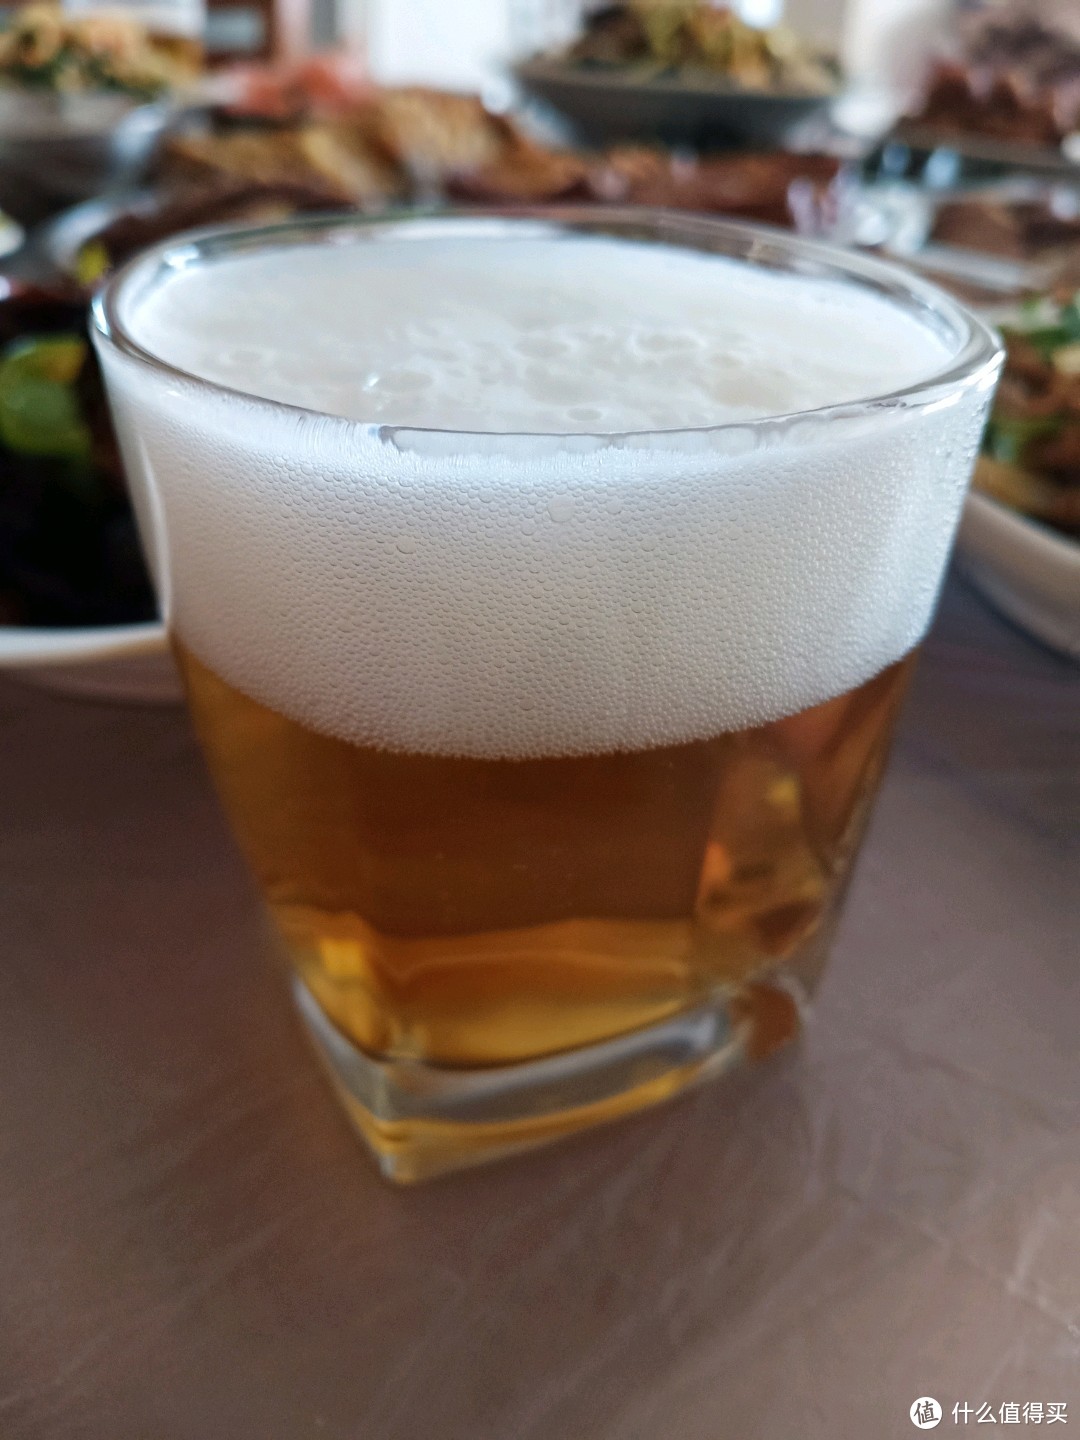 与霓轰同步享用，购自7－11便利店的日本产麒麟经典芳醇限定版啤酒评测